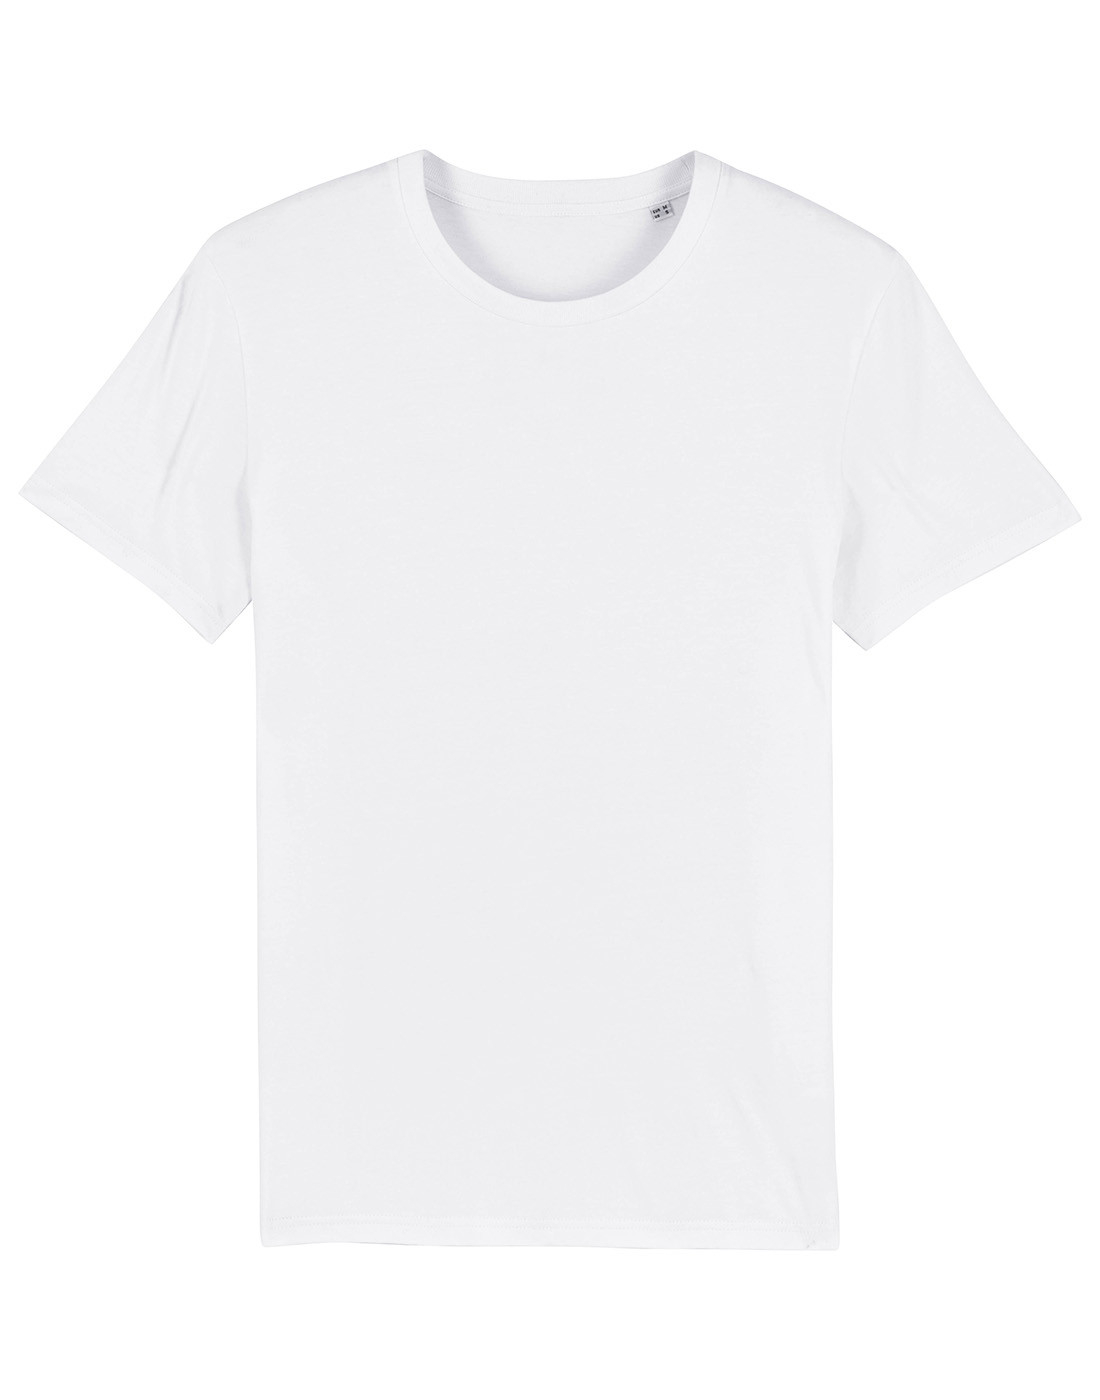 Buy Stanley/Stella - T-Shirt - White